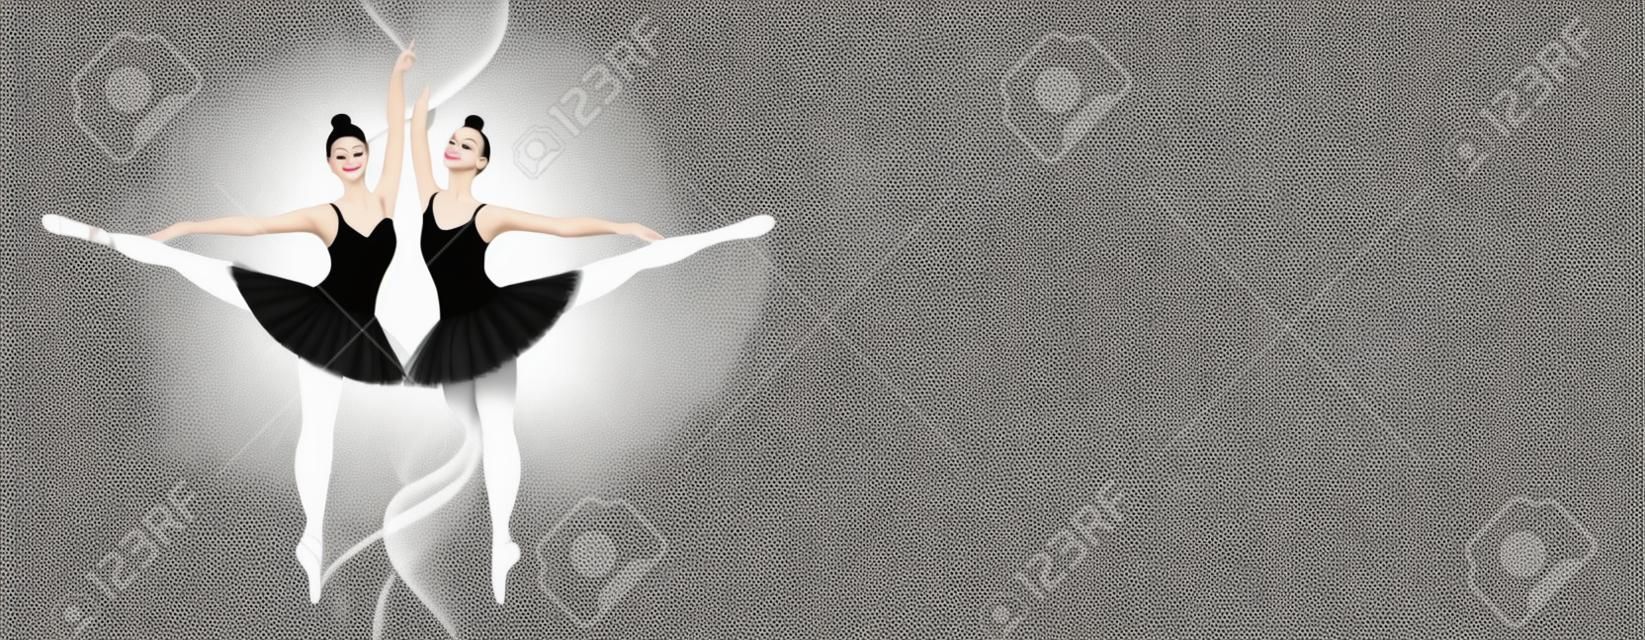 Baile de niñas en tutú en pointes sobre fondo blanco y negro. Bailarina cisne blanco y negro. Banner de ballet para escuela de danza, cursos, espectáculos. Gráficos vectoriales con espacio de copia.